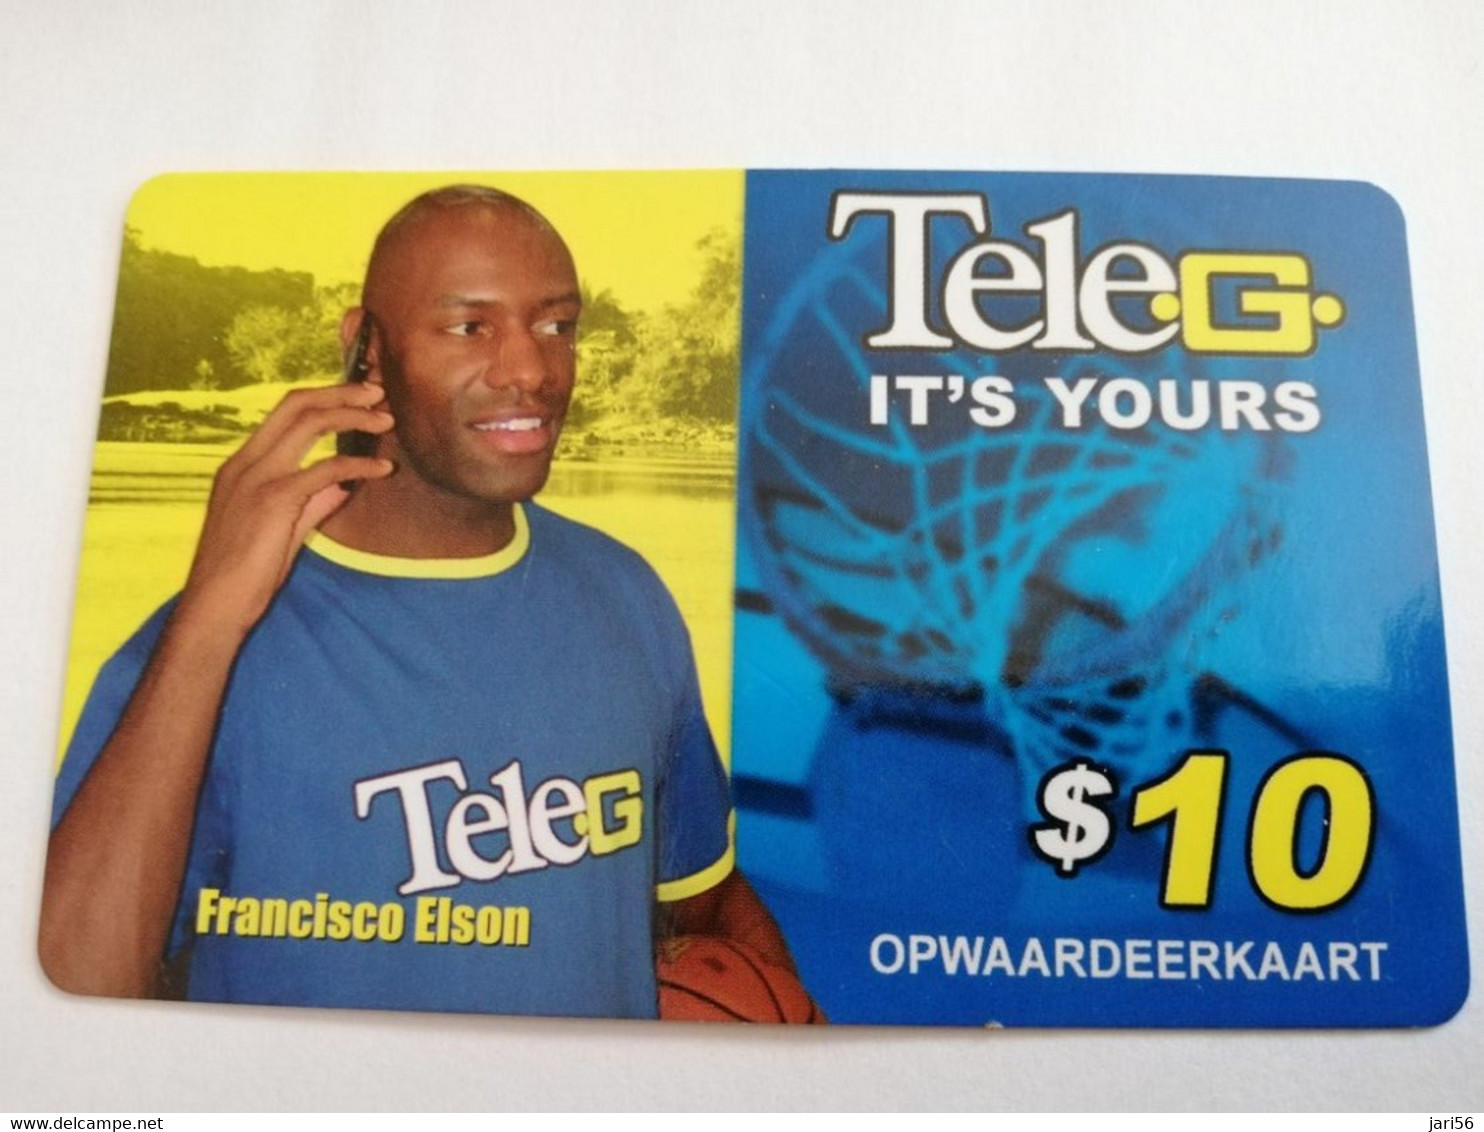 SURINAME US $10 UNIT GSM  PREPAID  FRANCISCO ELSON    MOBILE CARD           **5130 ** - Surinam